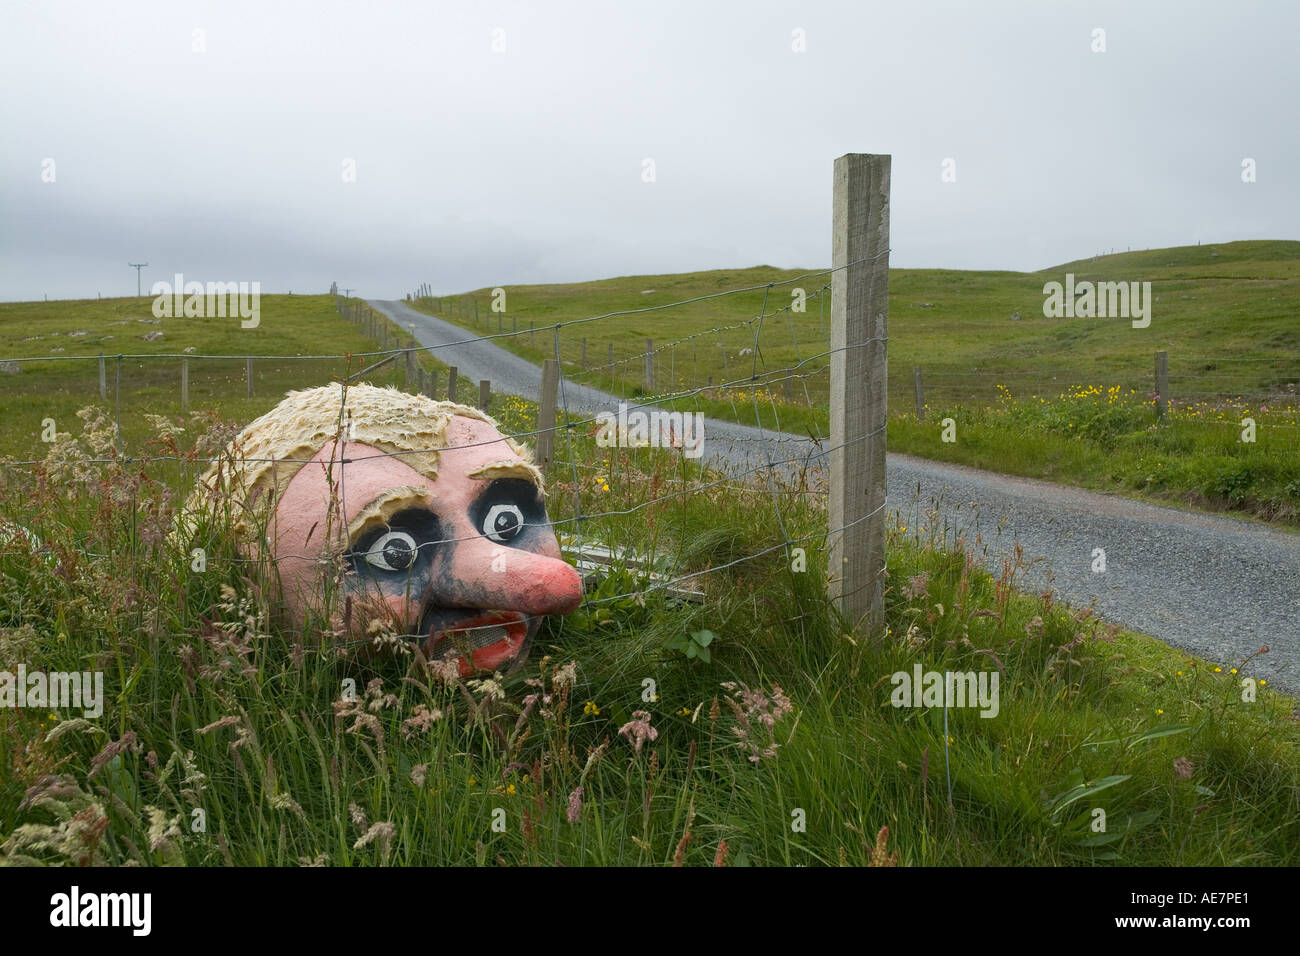 dh BRINDISTER SHETLAND testa del modello Troll bambola dietro recinzione in campo strada marionetta campagna isola Foto Stock